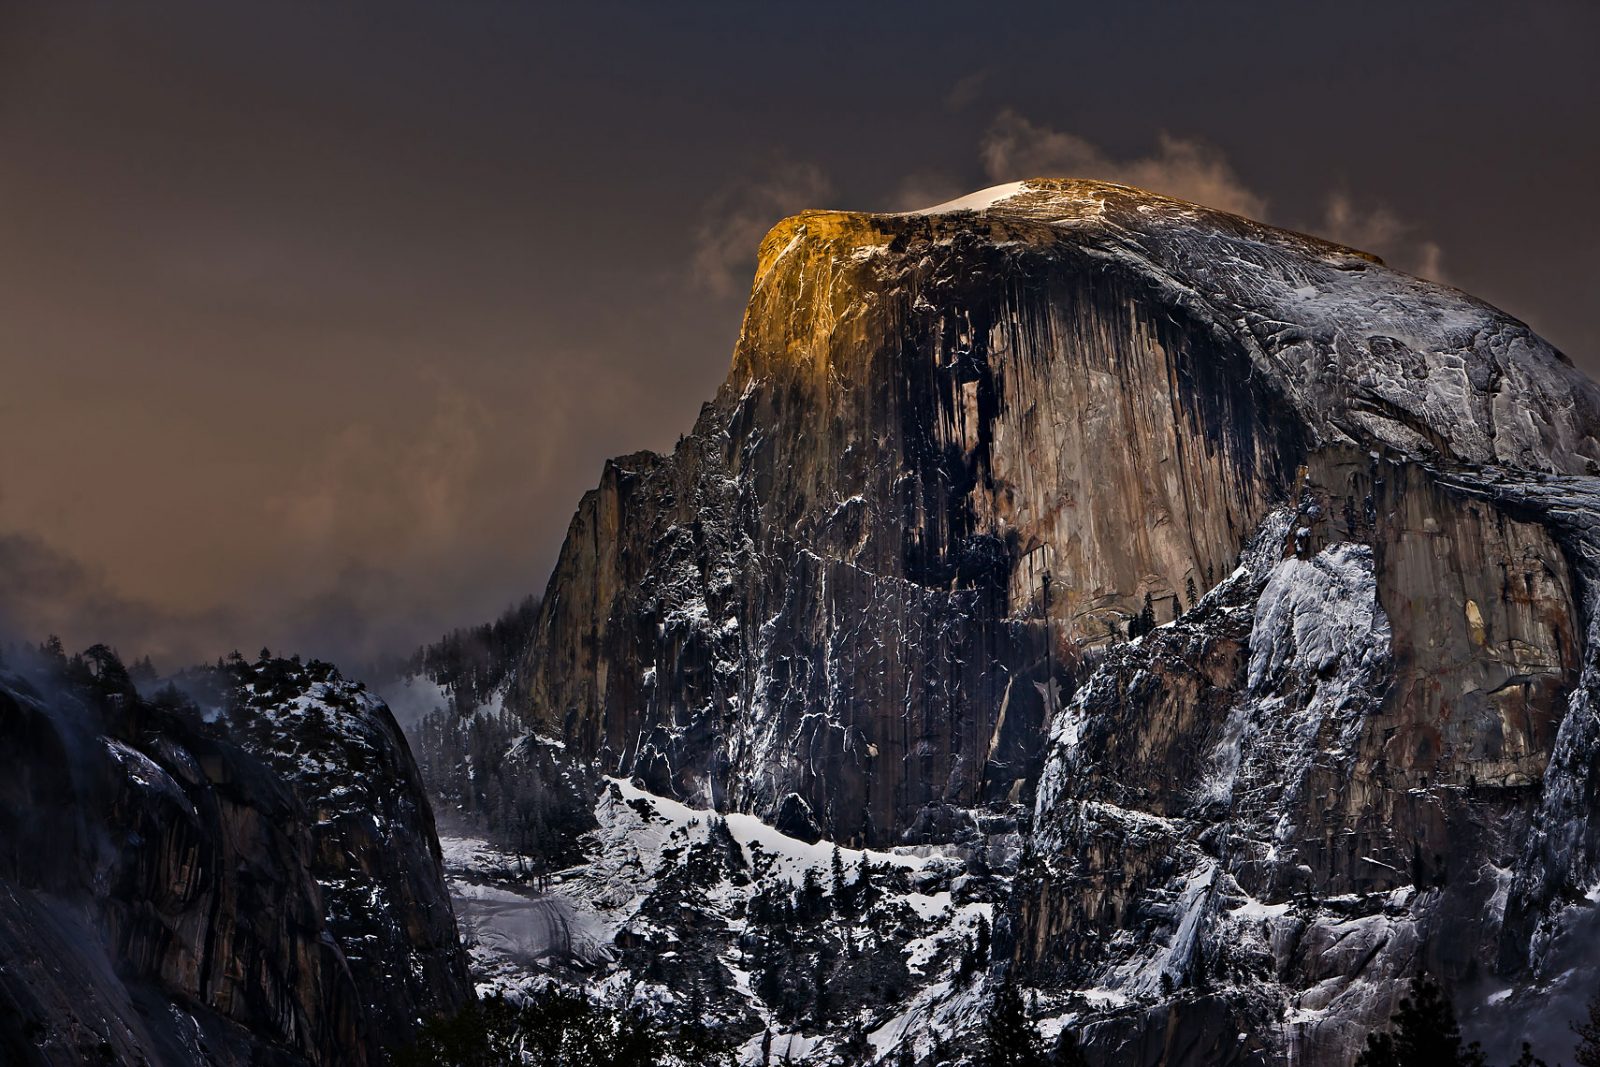 Shawn Reeder's Yosemite Time Lapse